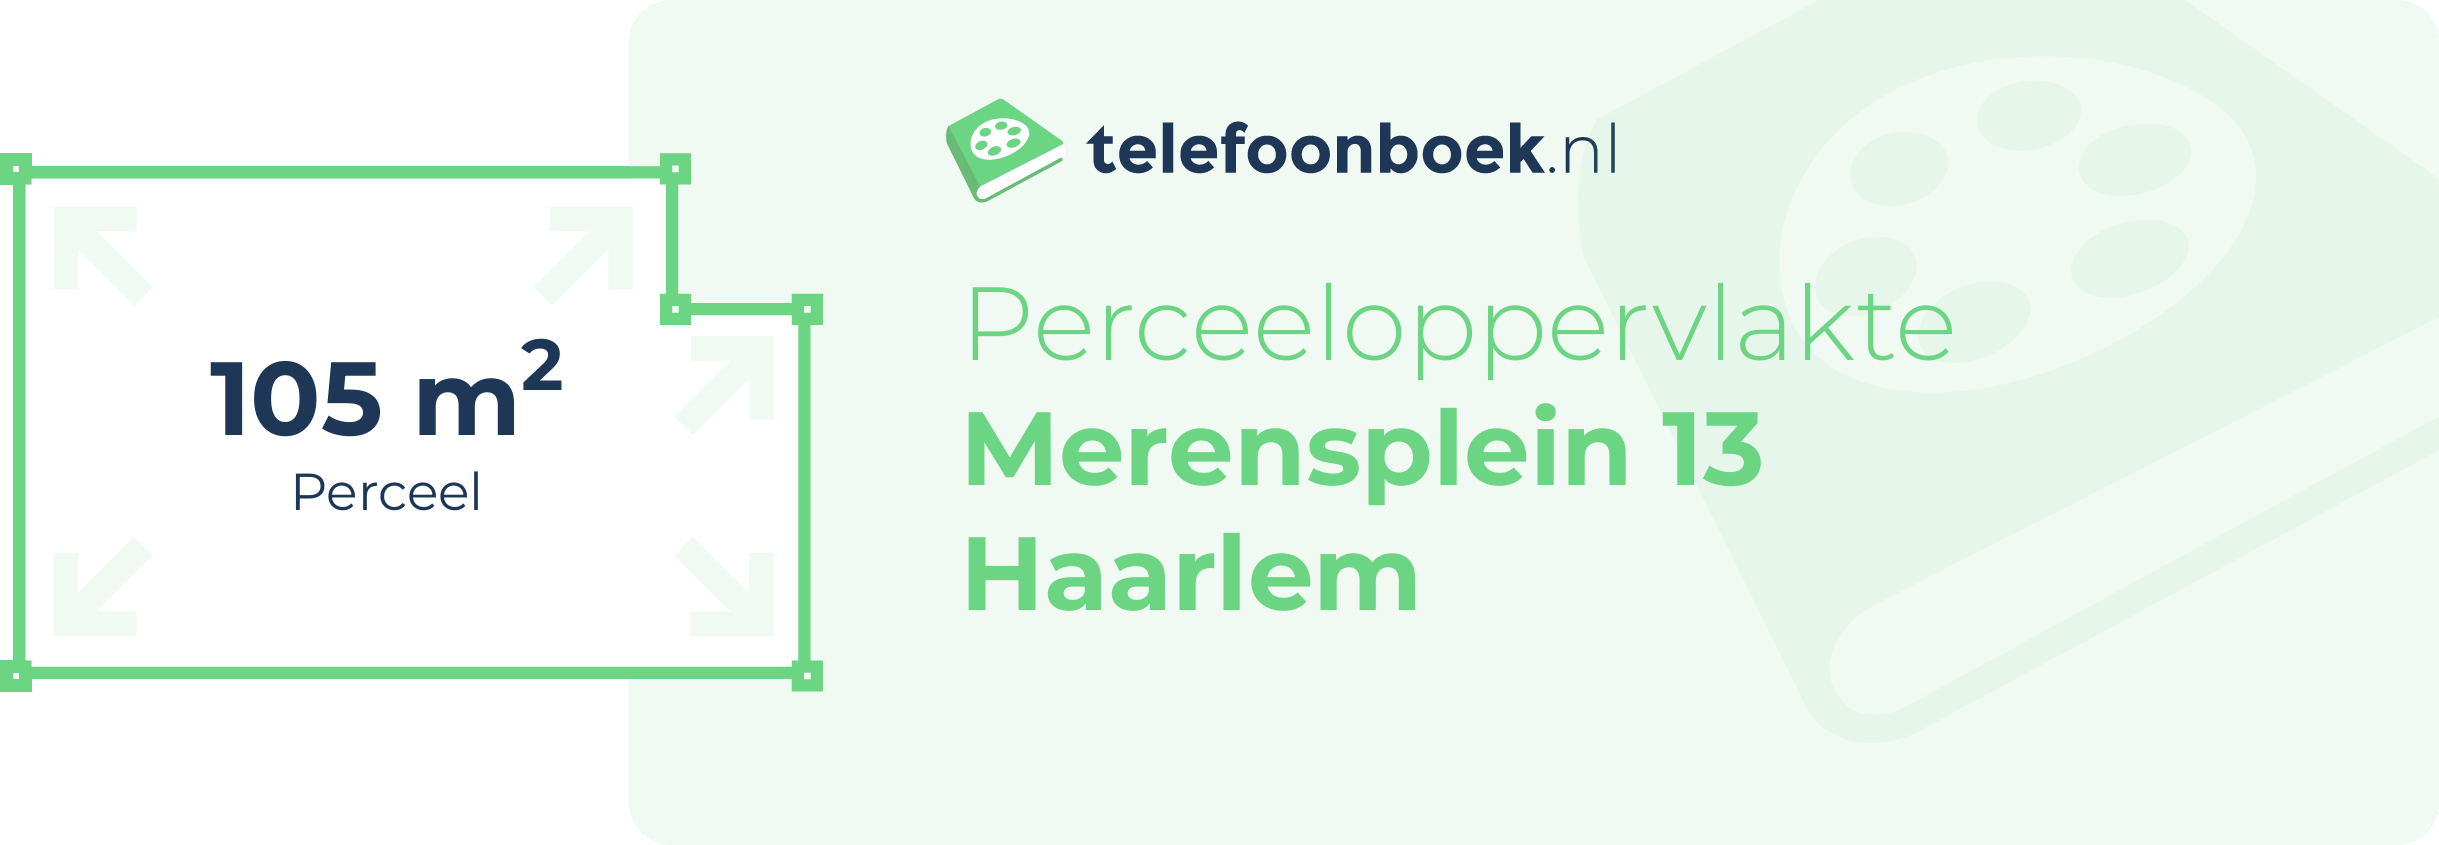 Perceeloppervlakte Merensplein 13 Haarlem